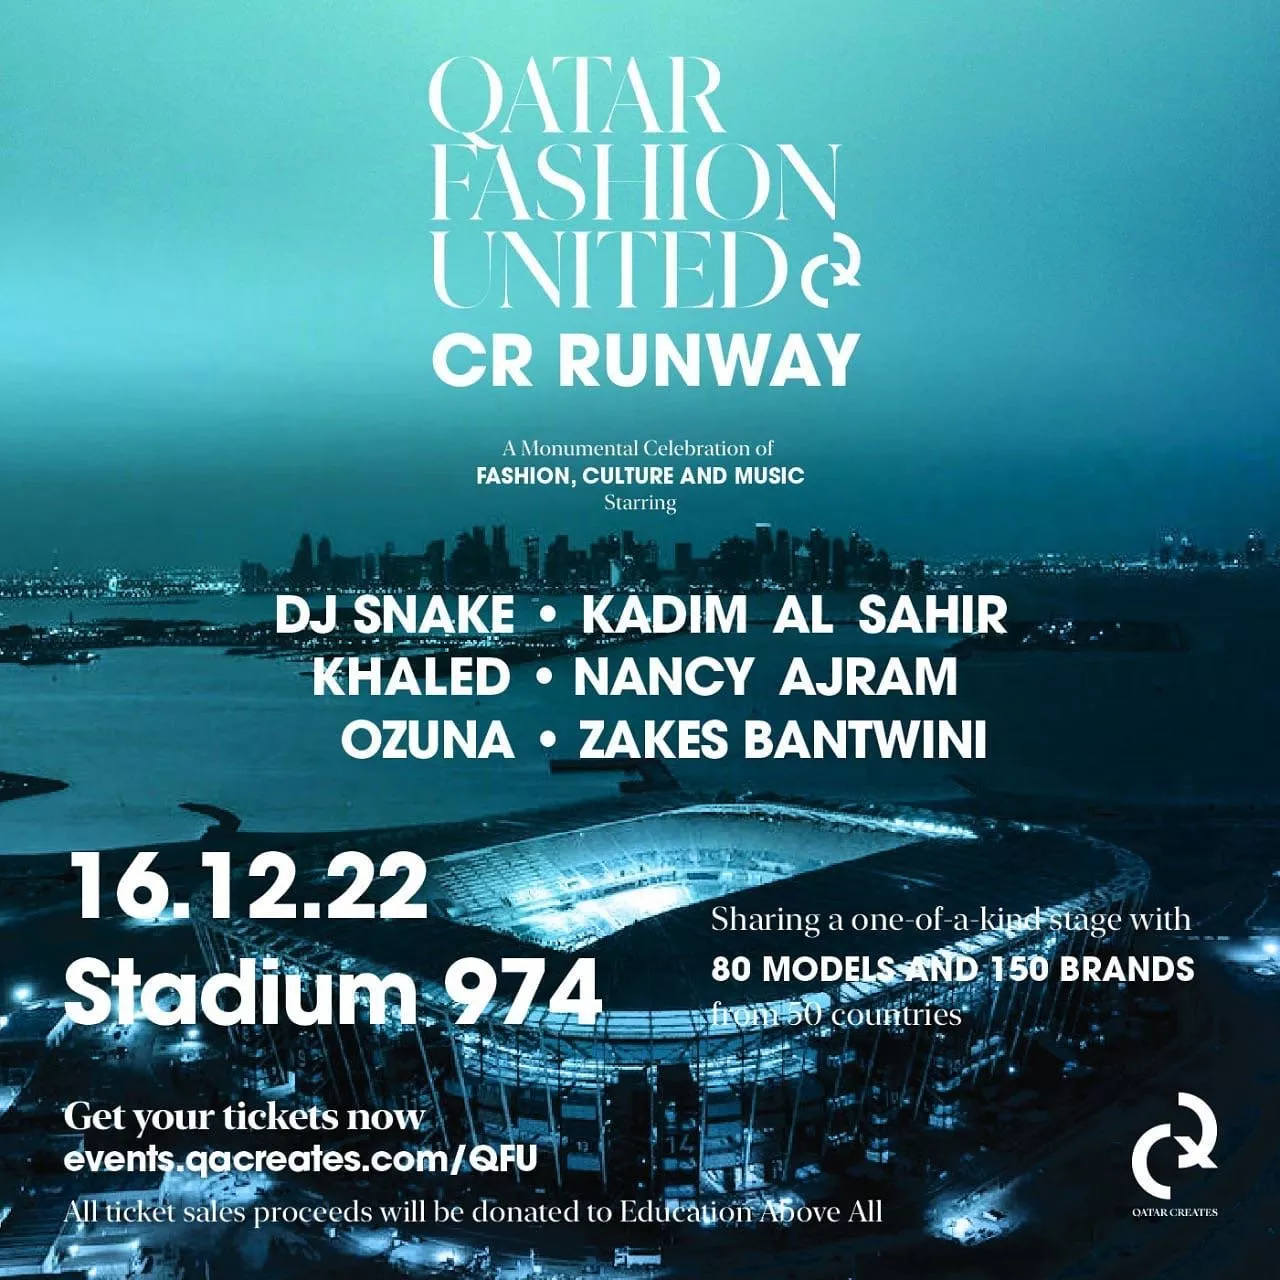 قطر تستعد لعرض أزياء هو الأكبر من نوعه في العالم: Qatar Fashion United & CR Runway